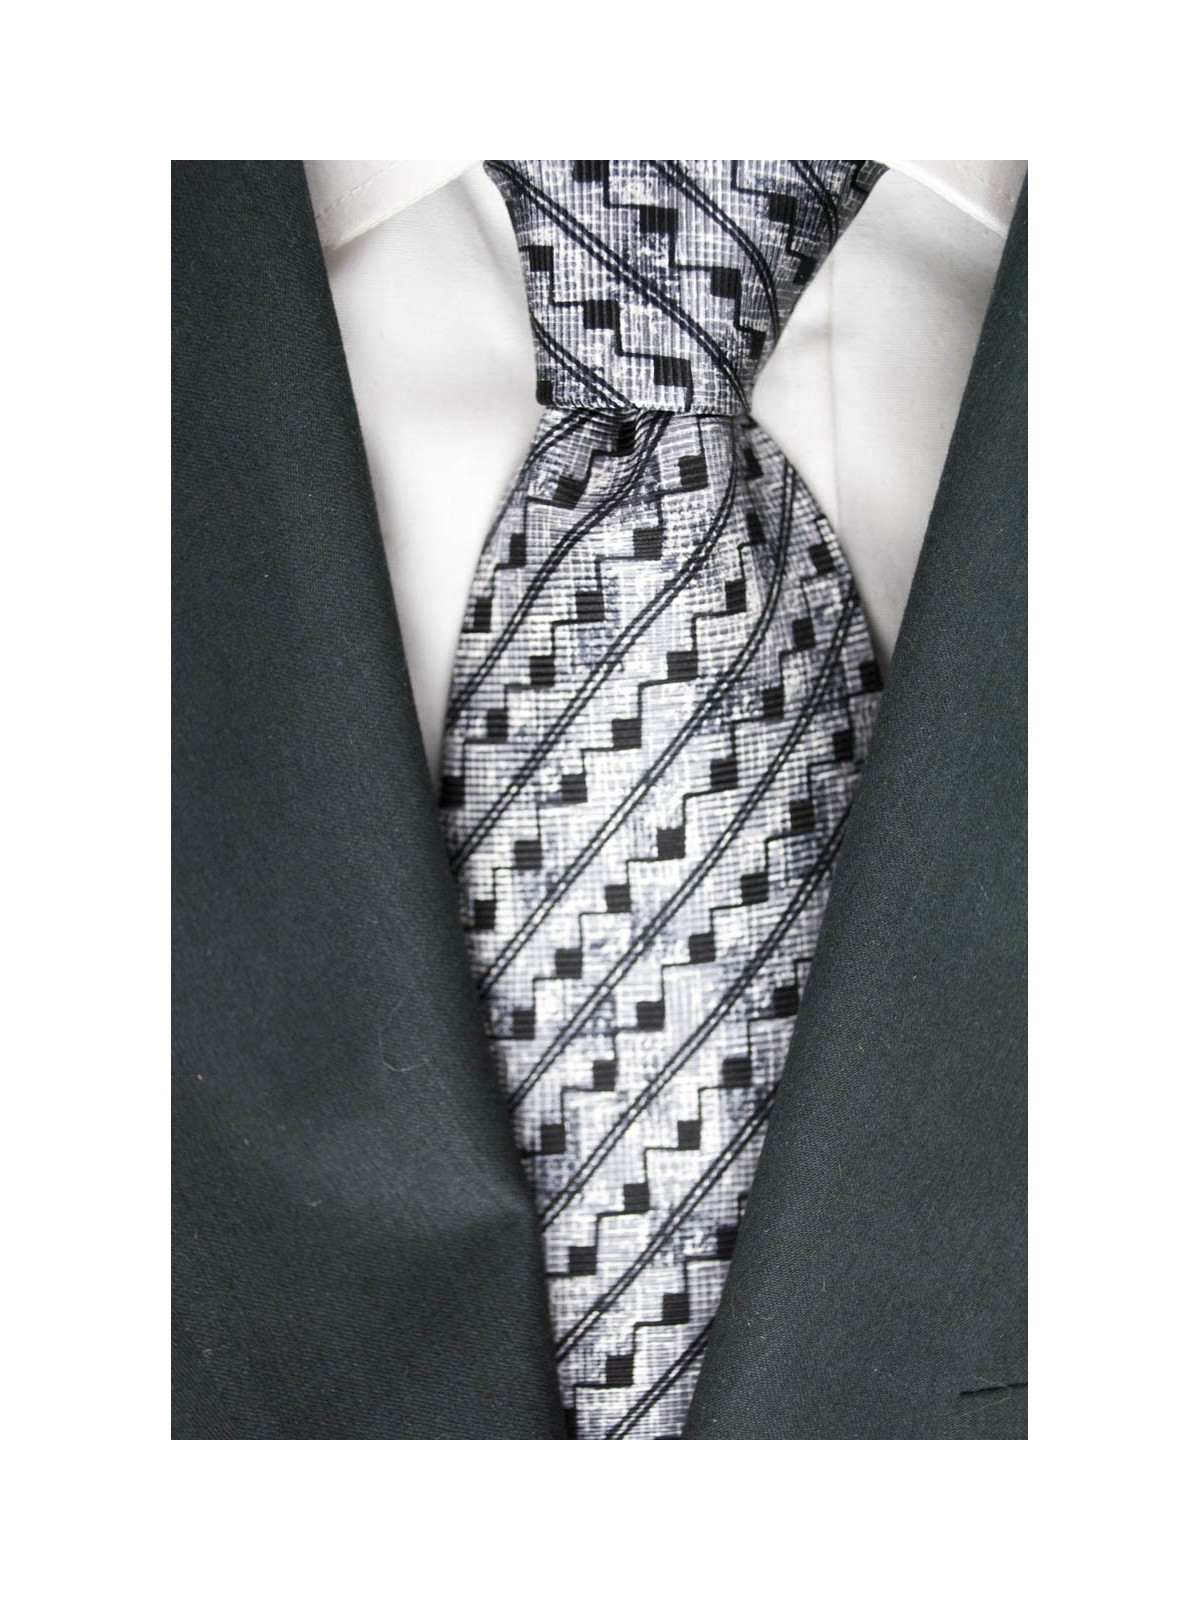 Krawatte Hellgrau Mit Kleinen Geometrischen Mustern In Schwarz - Basile - 100% Reine Seide